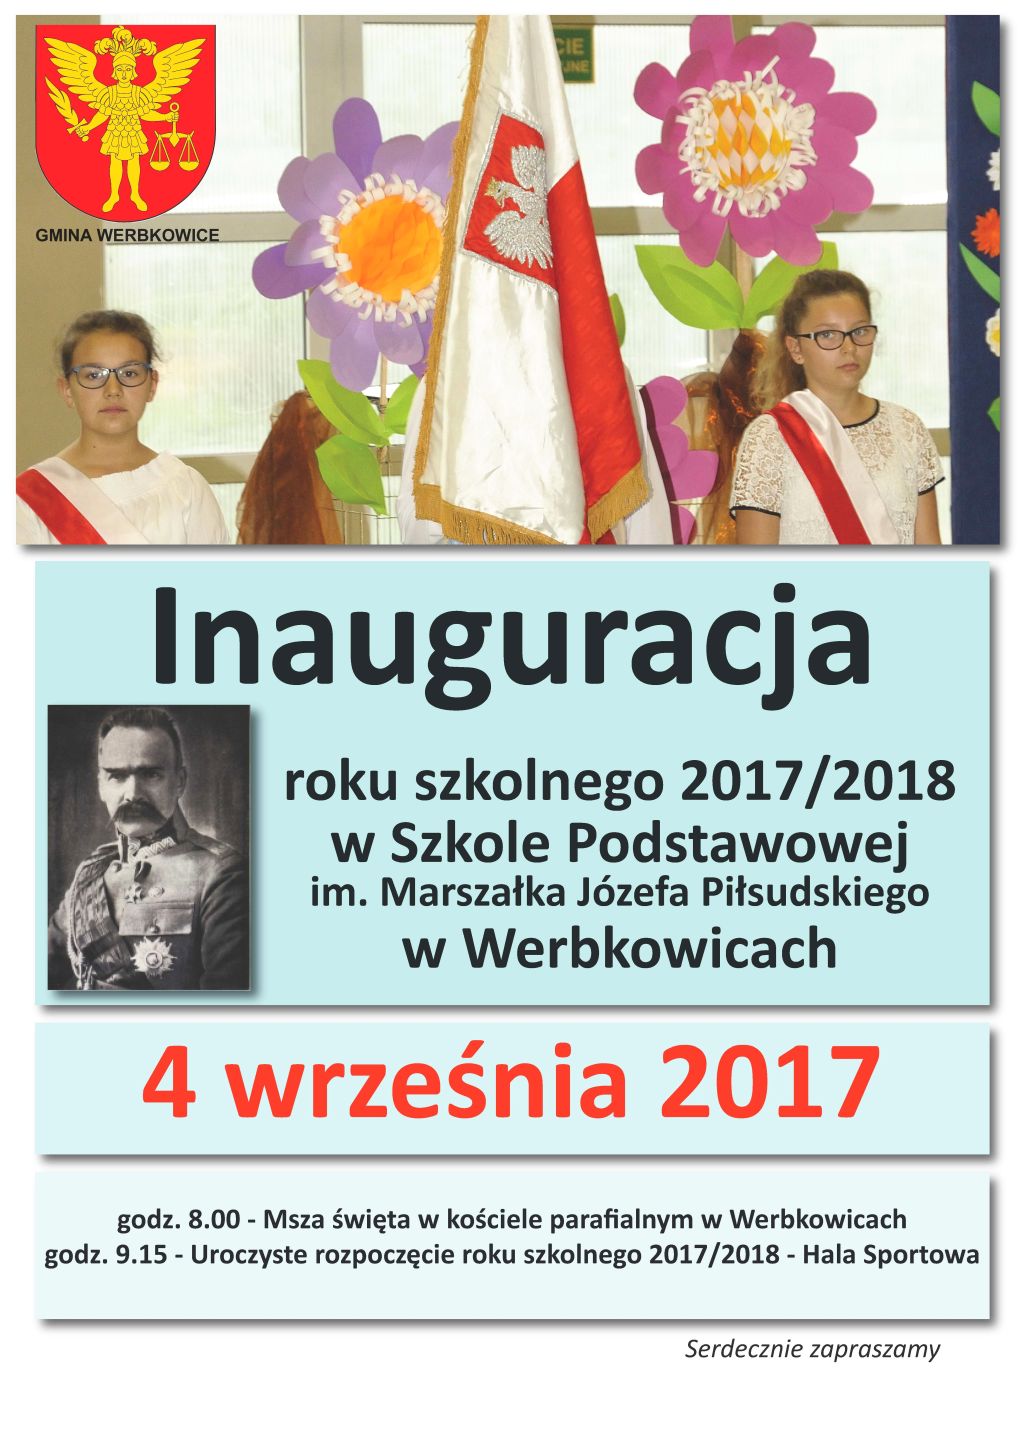 Inauguracja roku szkolnego 2017/2018 w Szkole Podstawowej w Werbkowicach